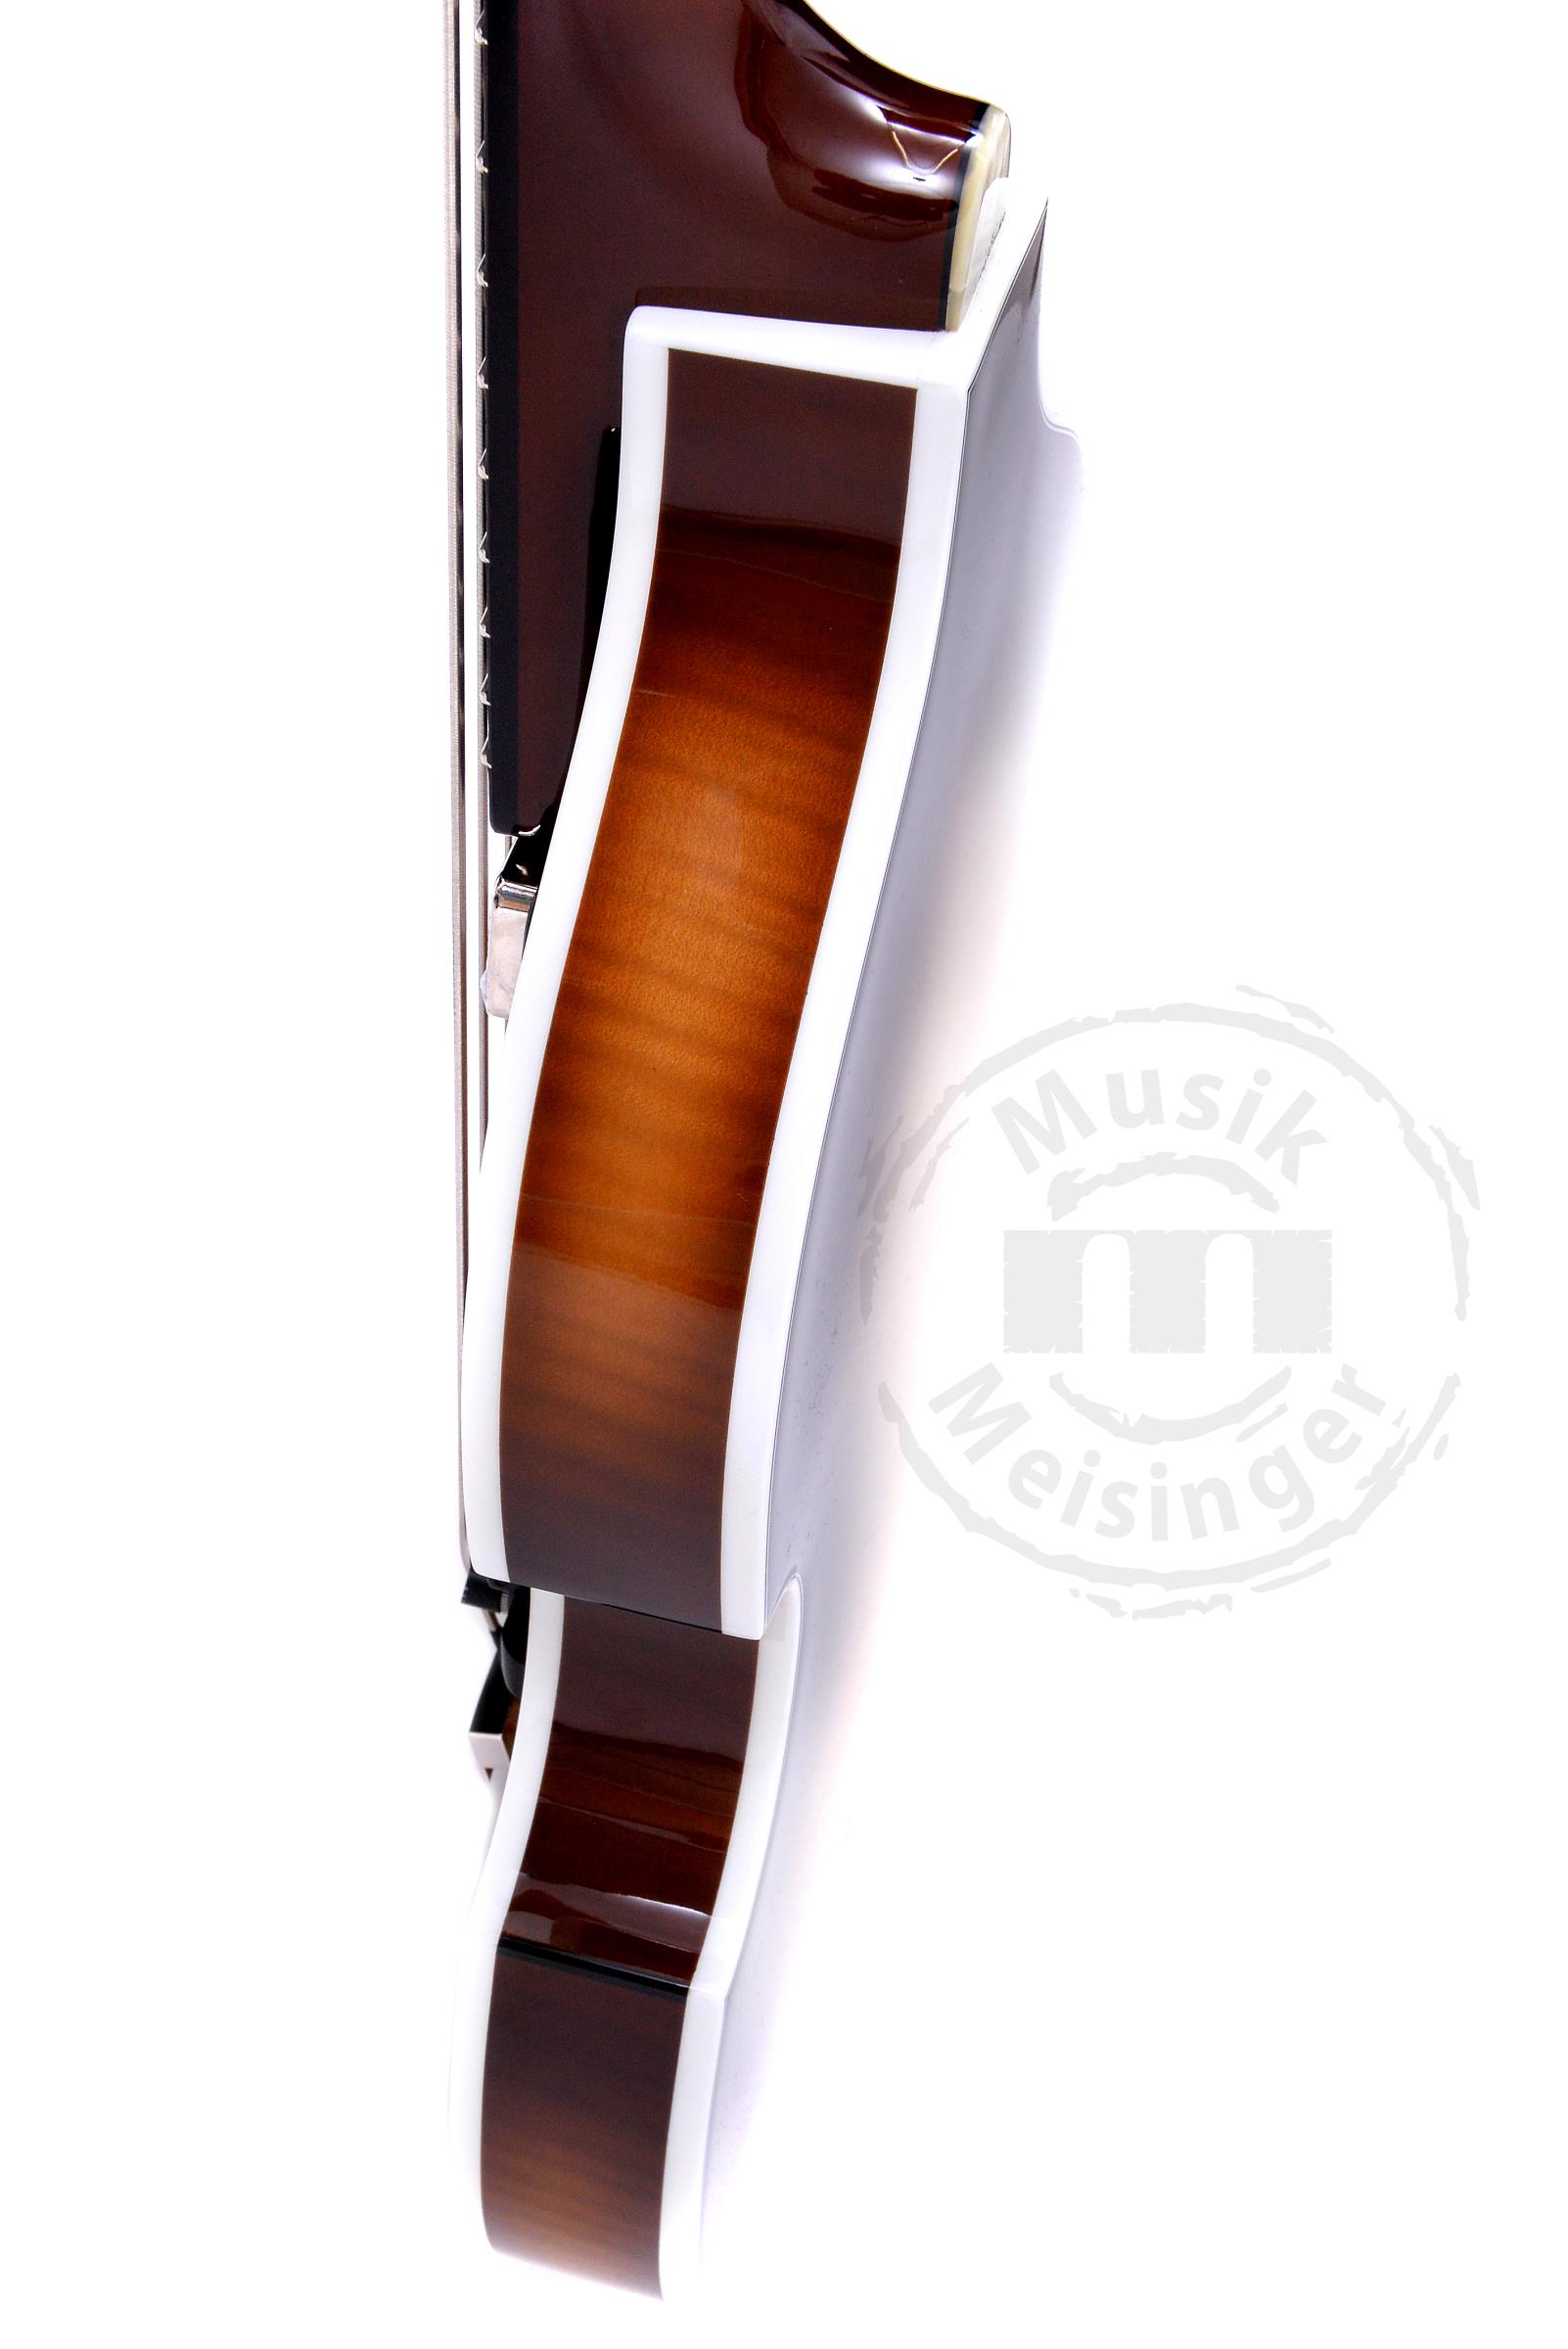 HÖFNER 63 Violin Bass 60th Anniversary Limited Edition Left